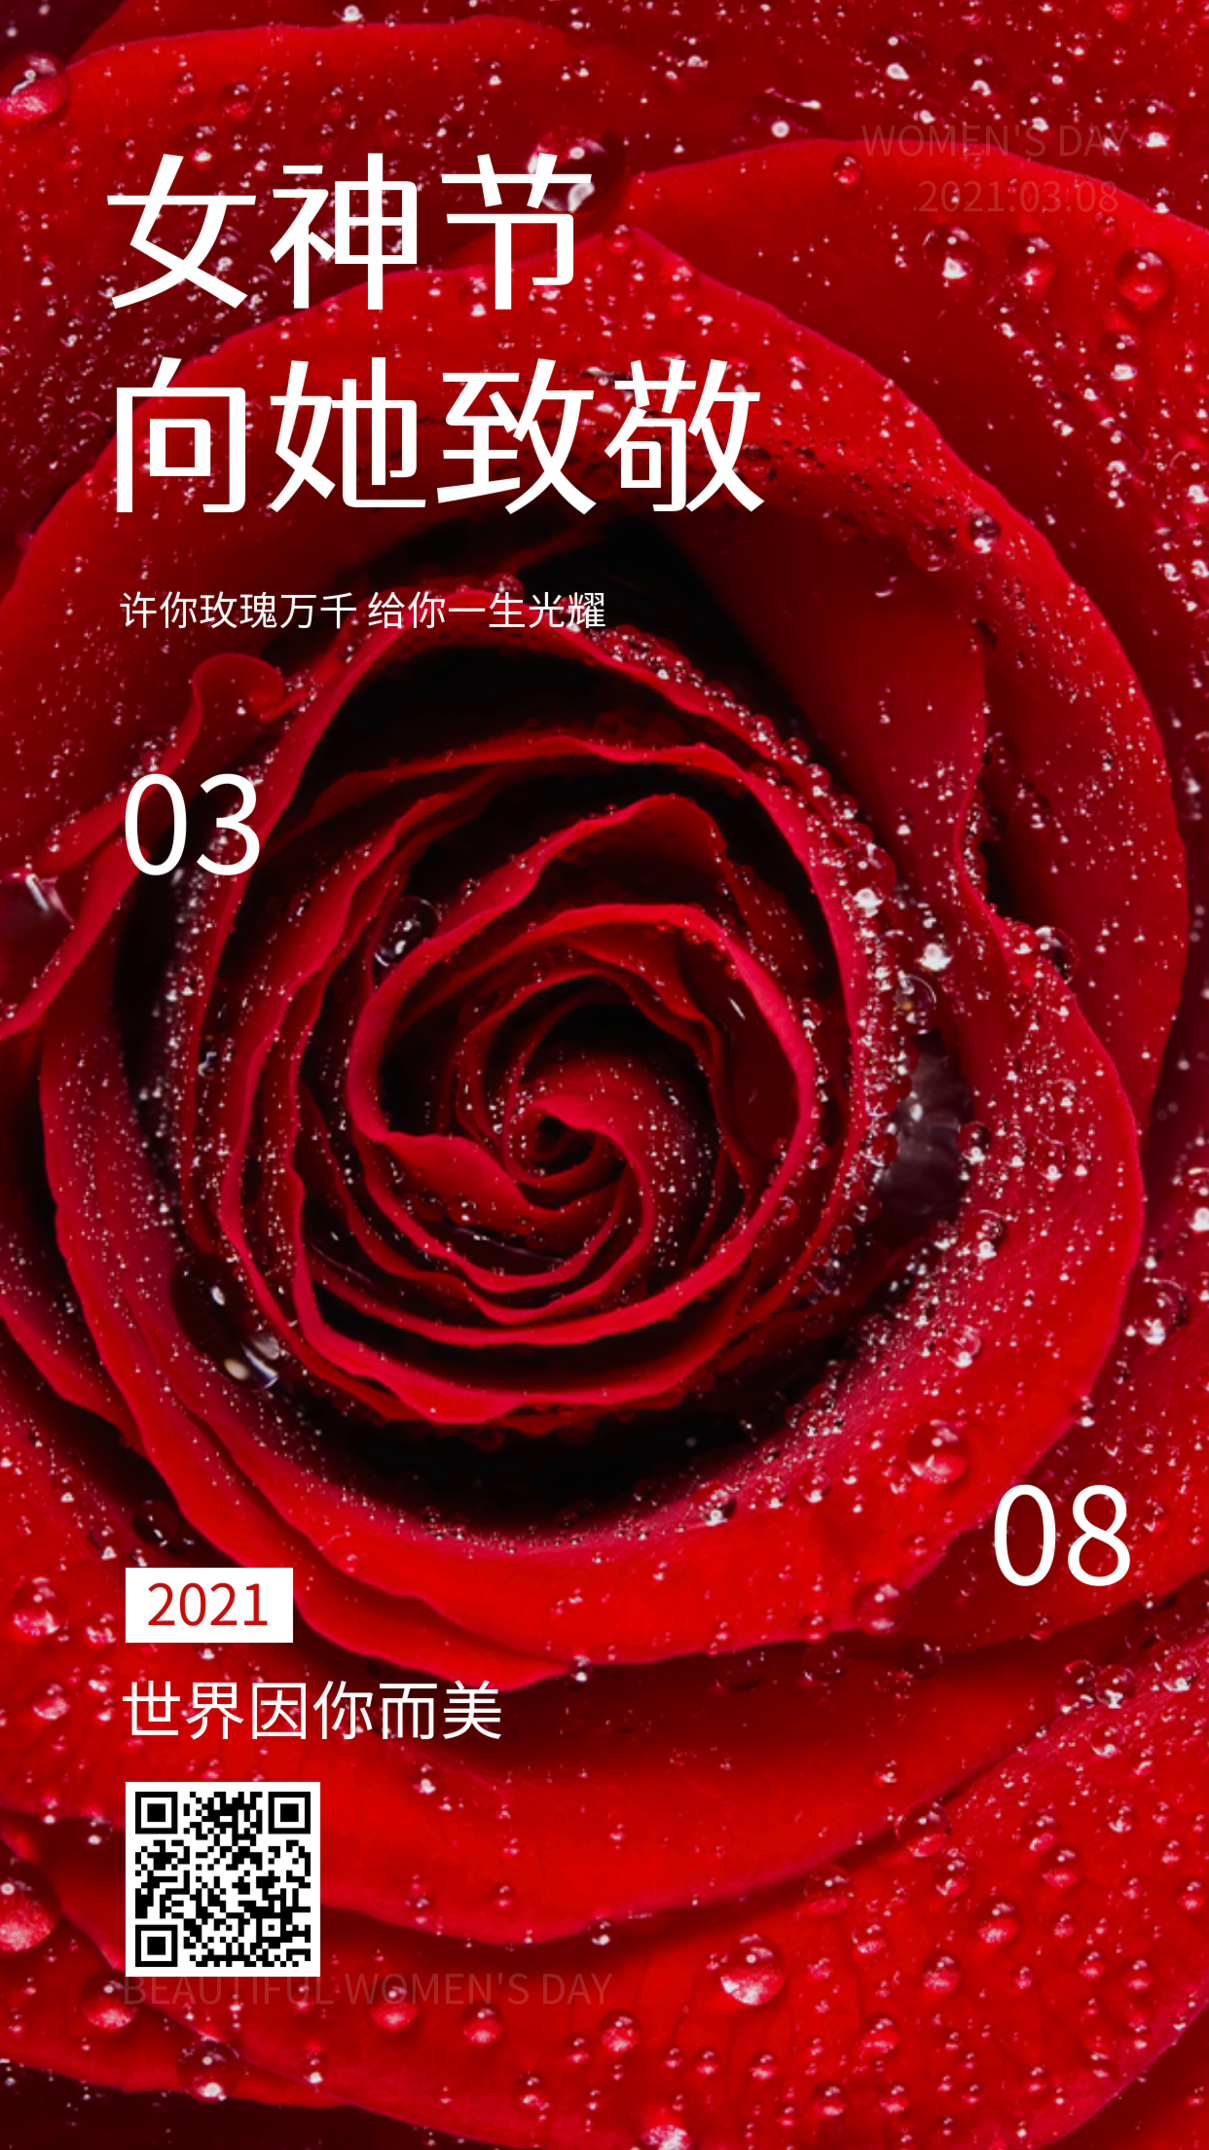 摄影图38女神节妇女节节日祝福手机海报